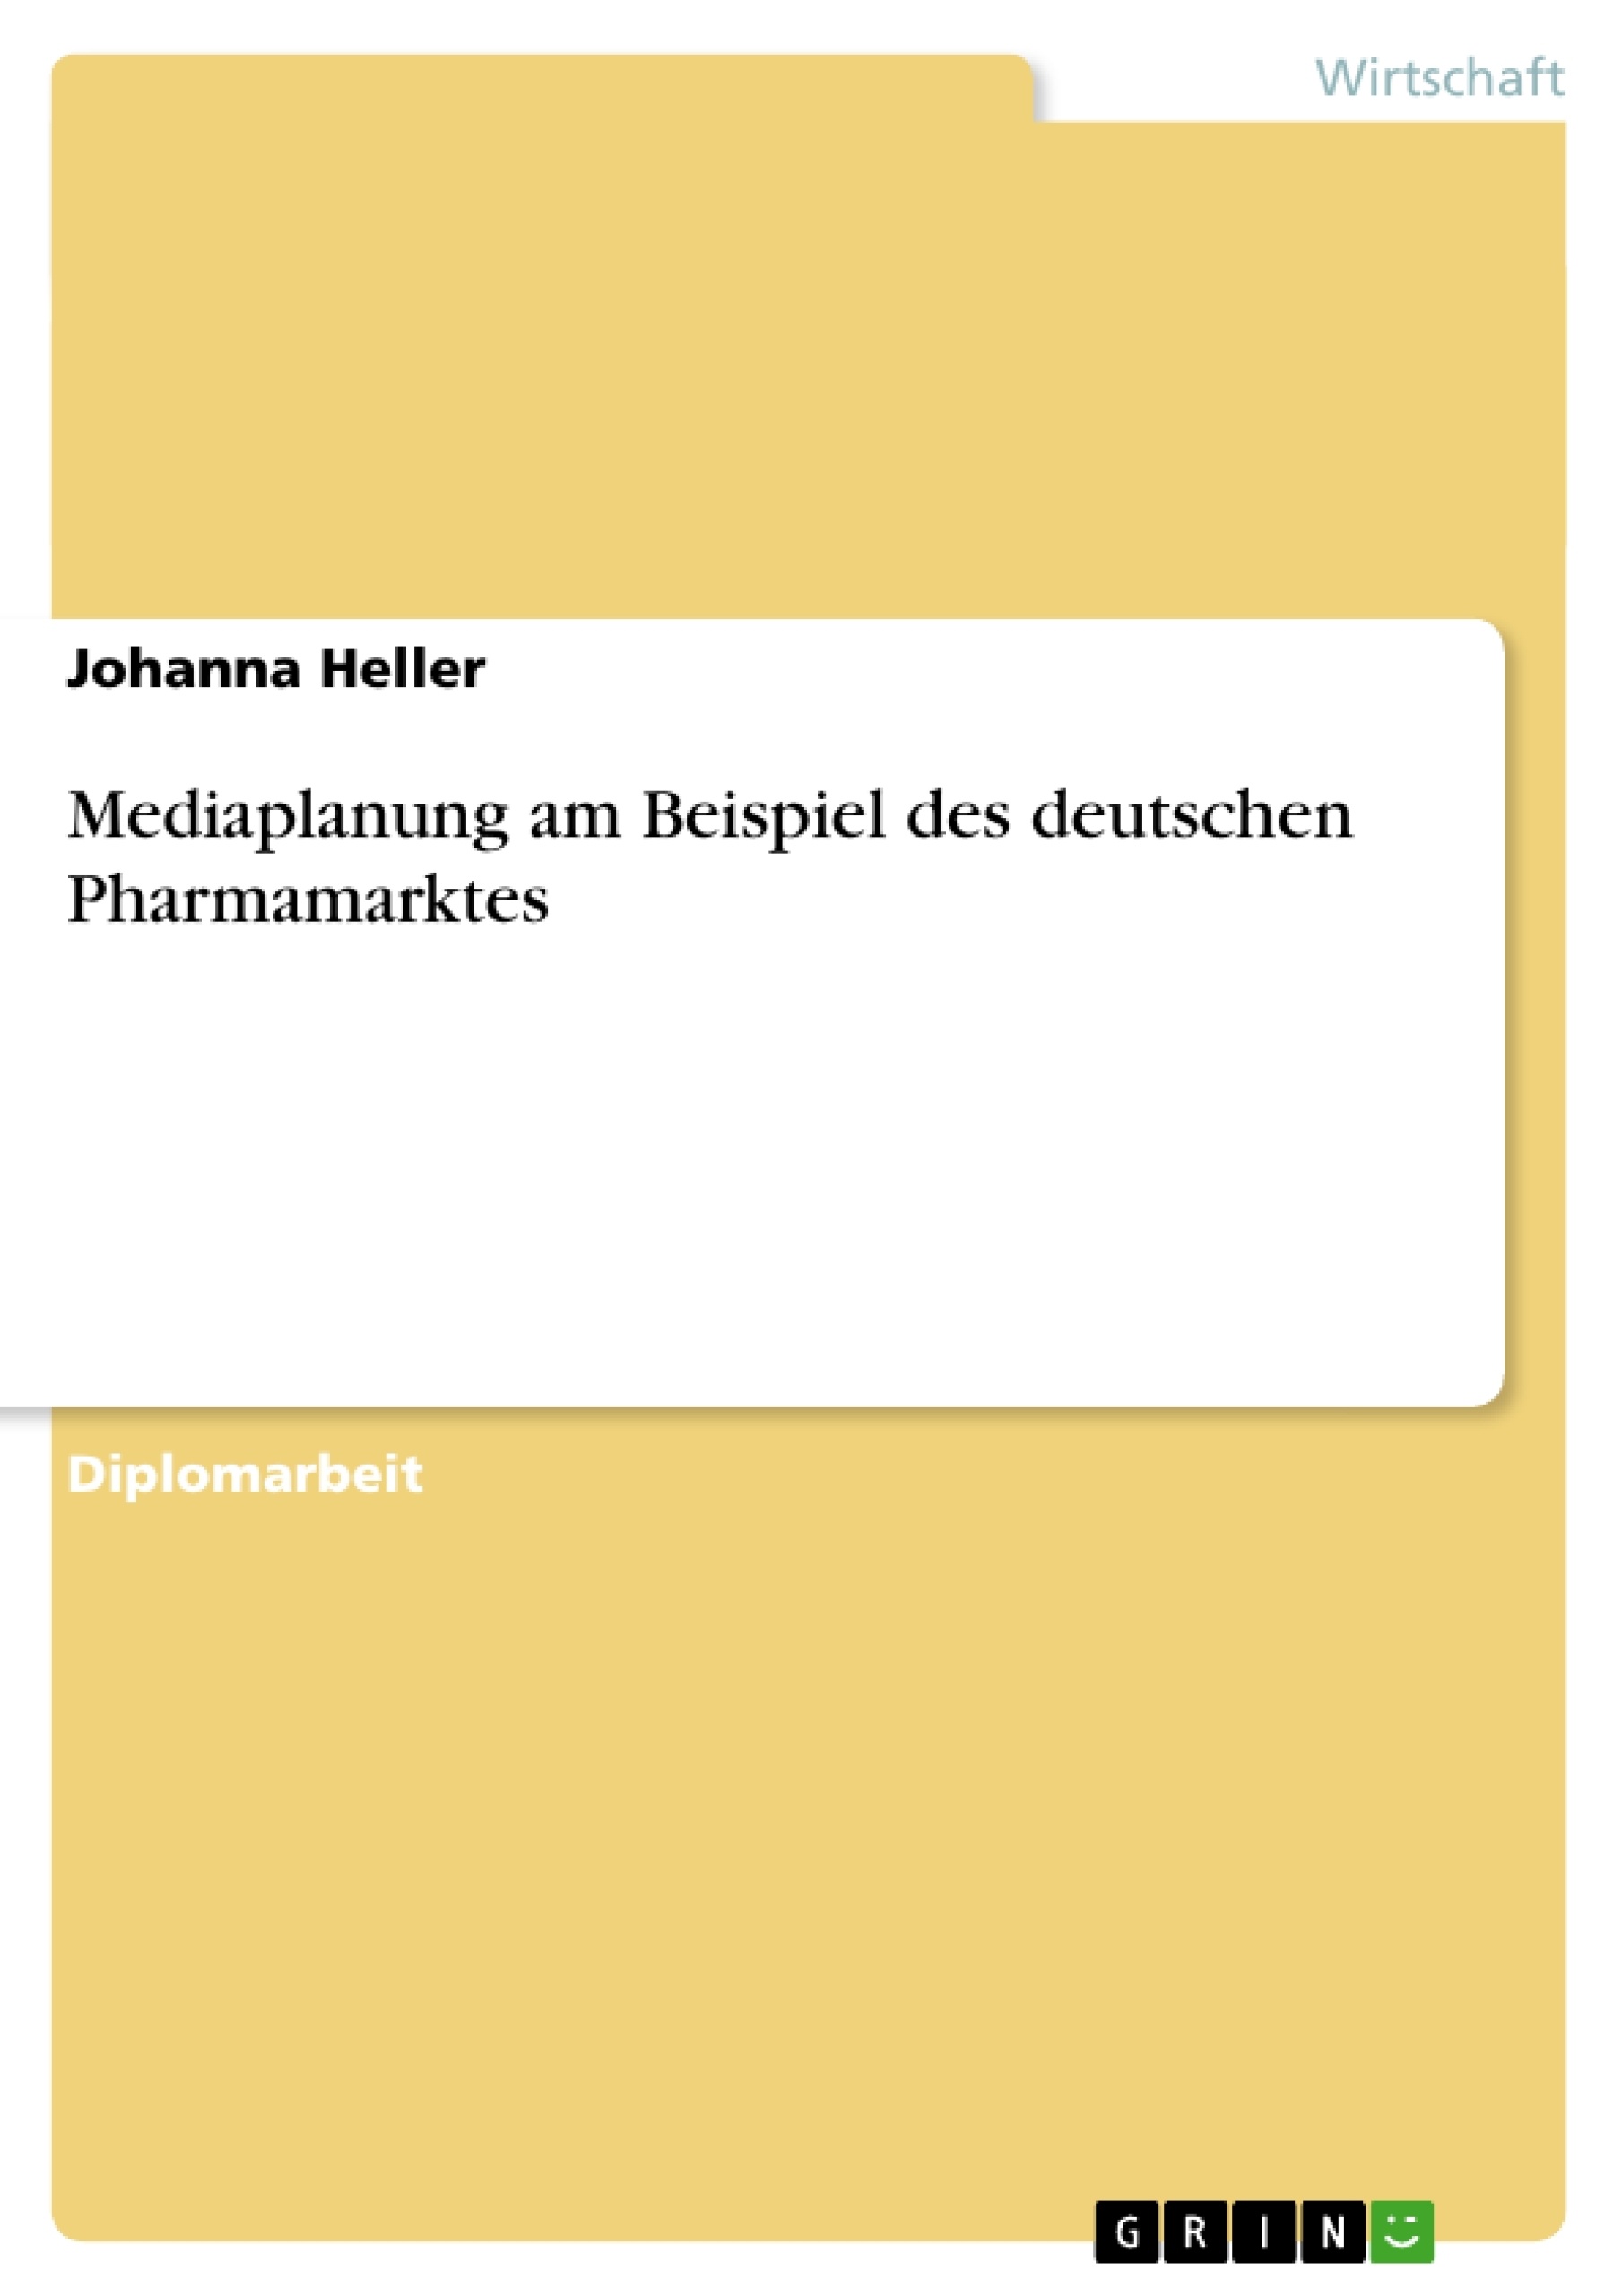 Title: Mediaplanung am Beispiel des deutschen Pharmamarktes